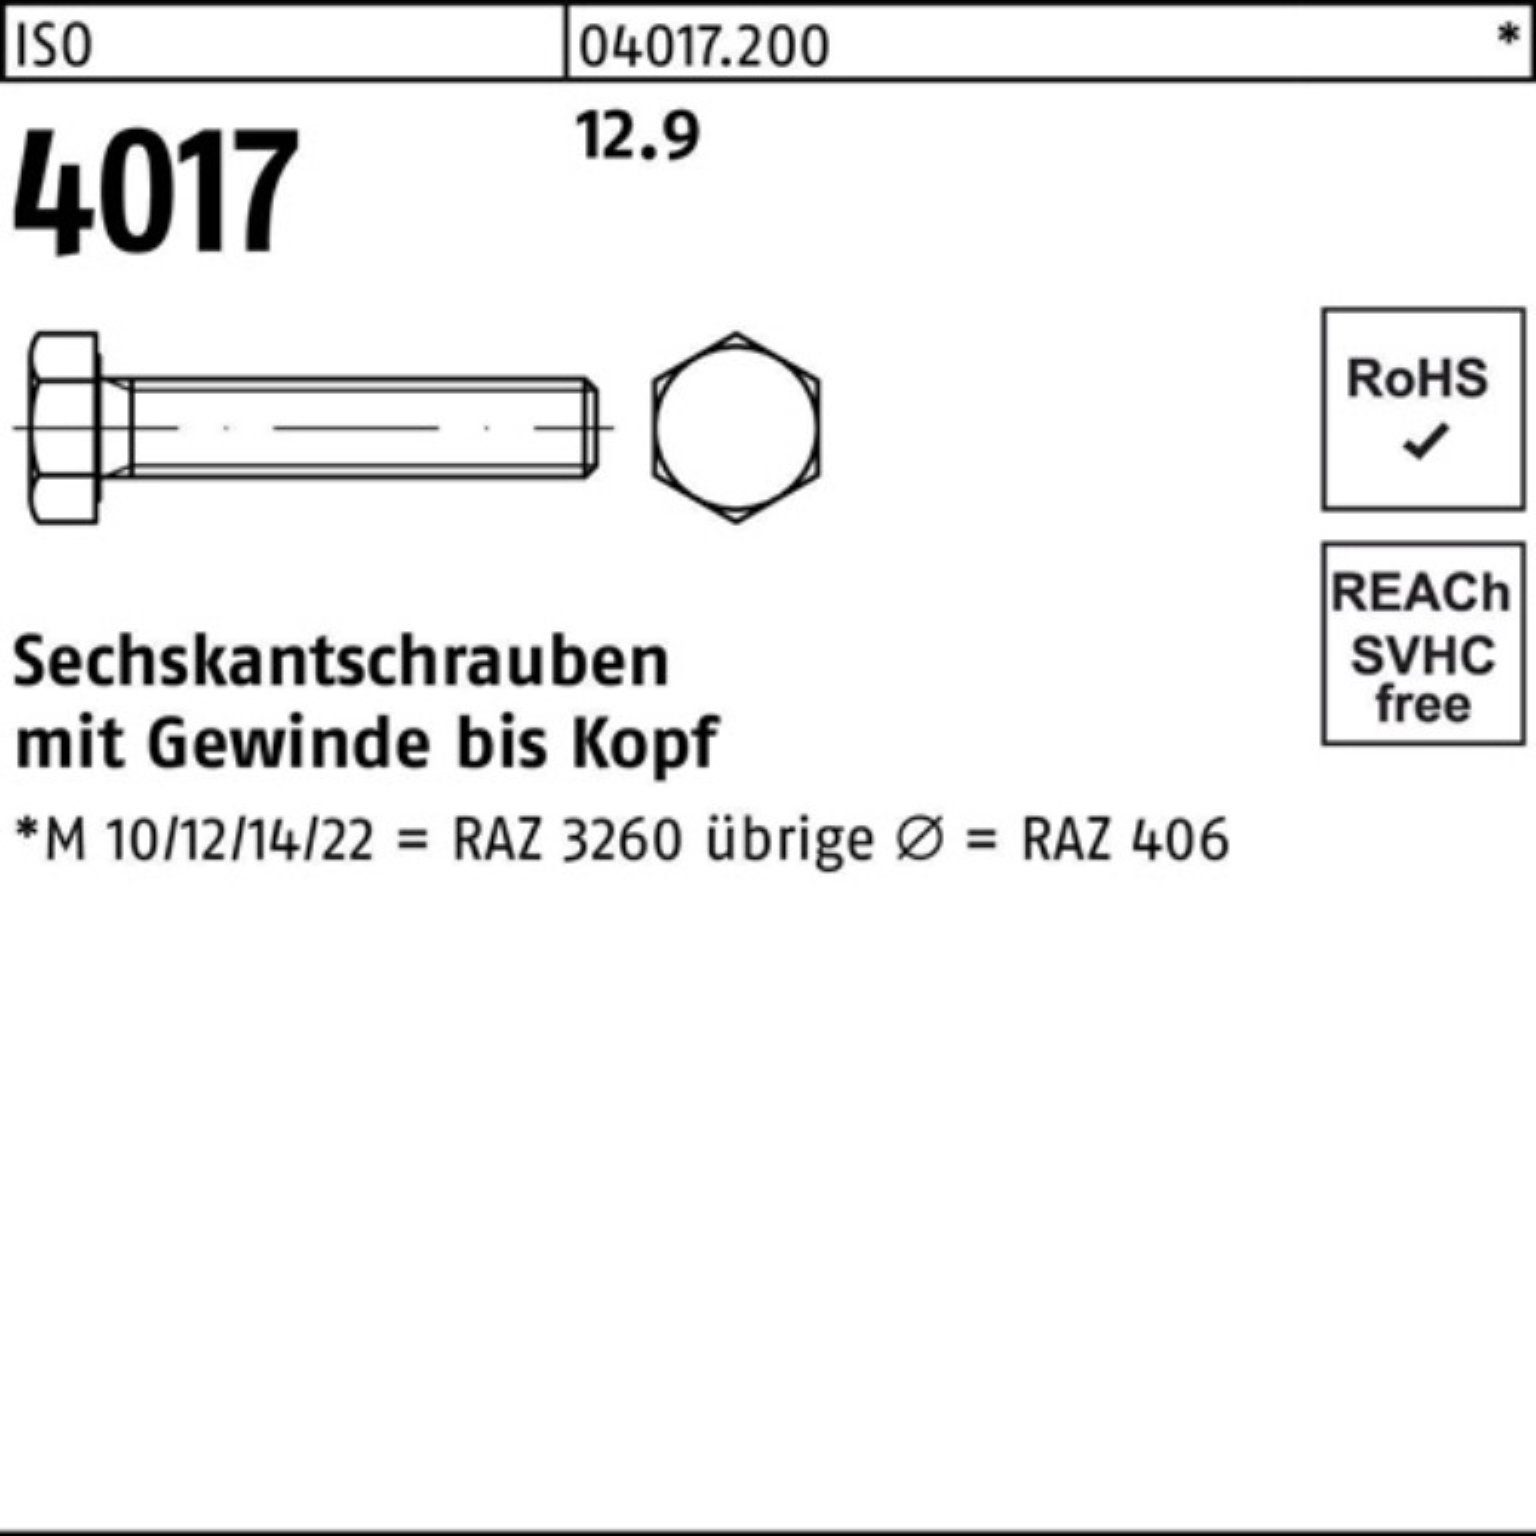 ISO Sechskantschraube 25 70 Bufab Sechskantschraube 4017 ISO 12.9 Pack VG 40 M24x Stück 100er